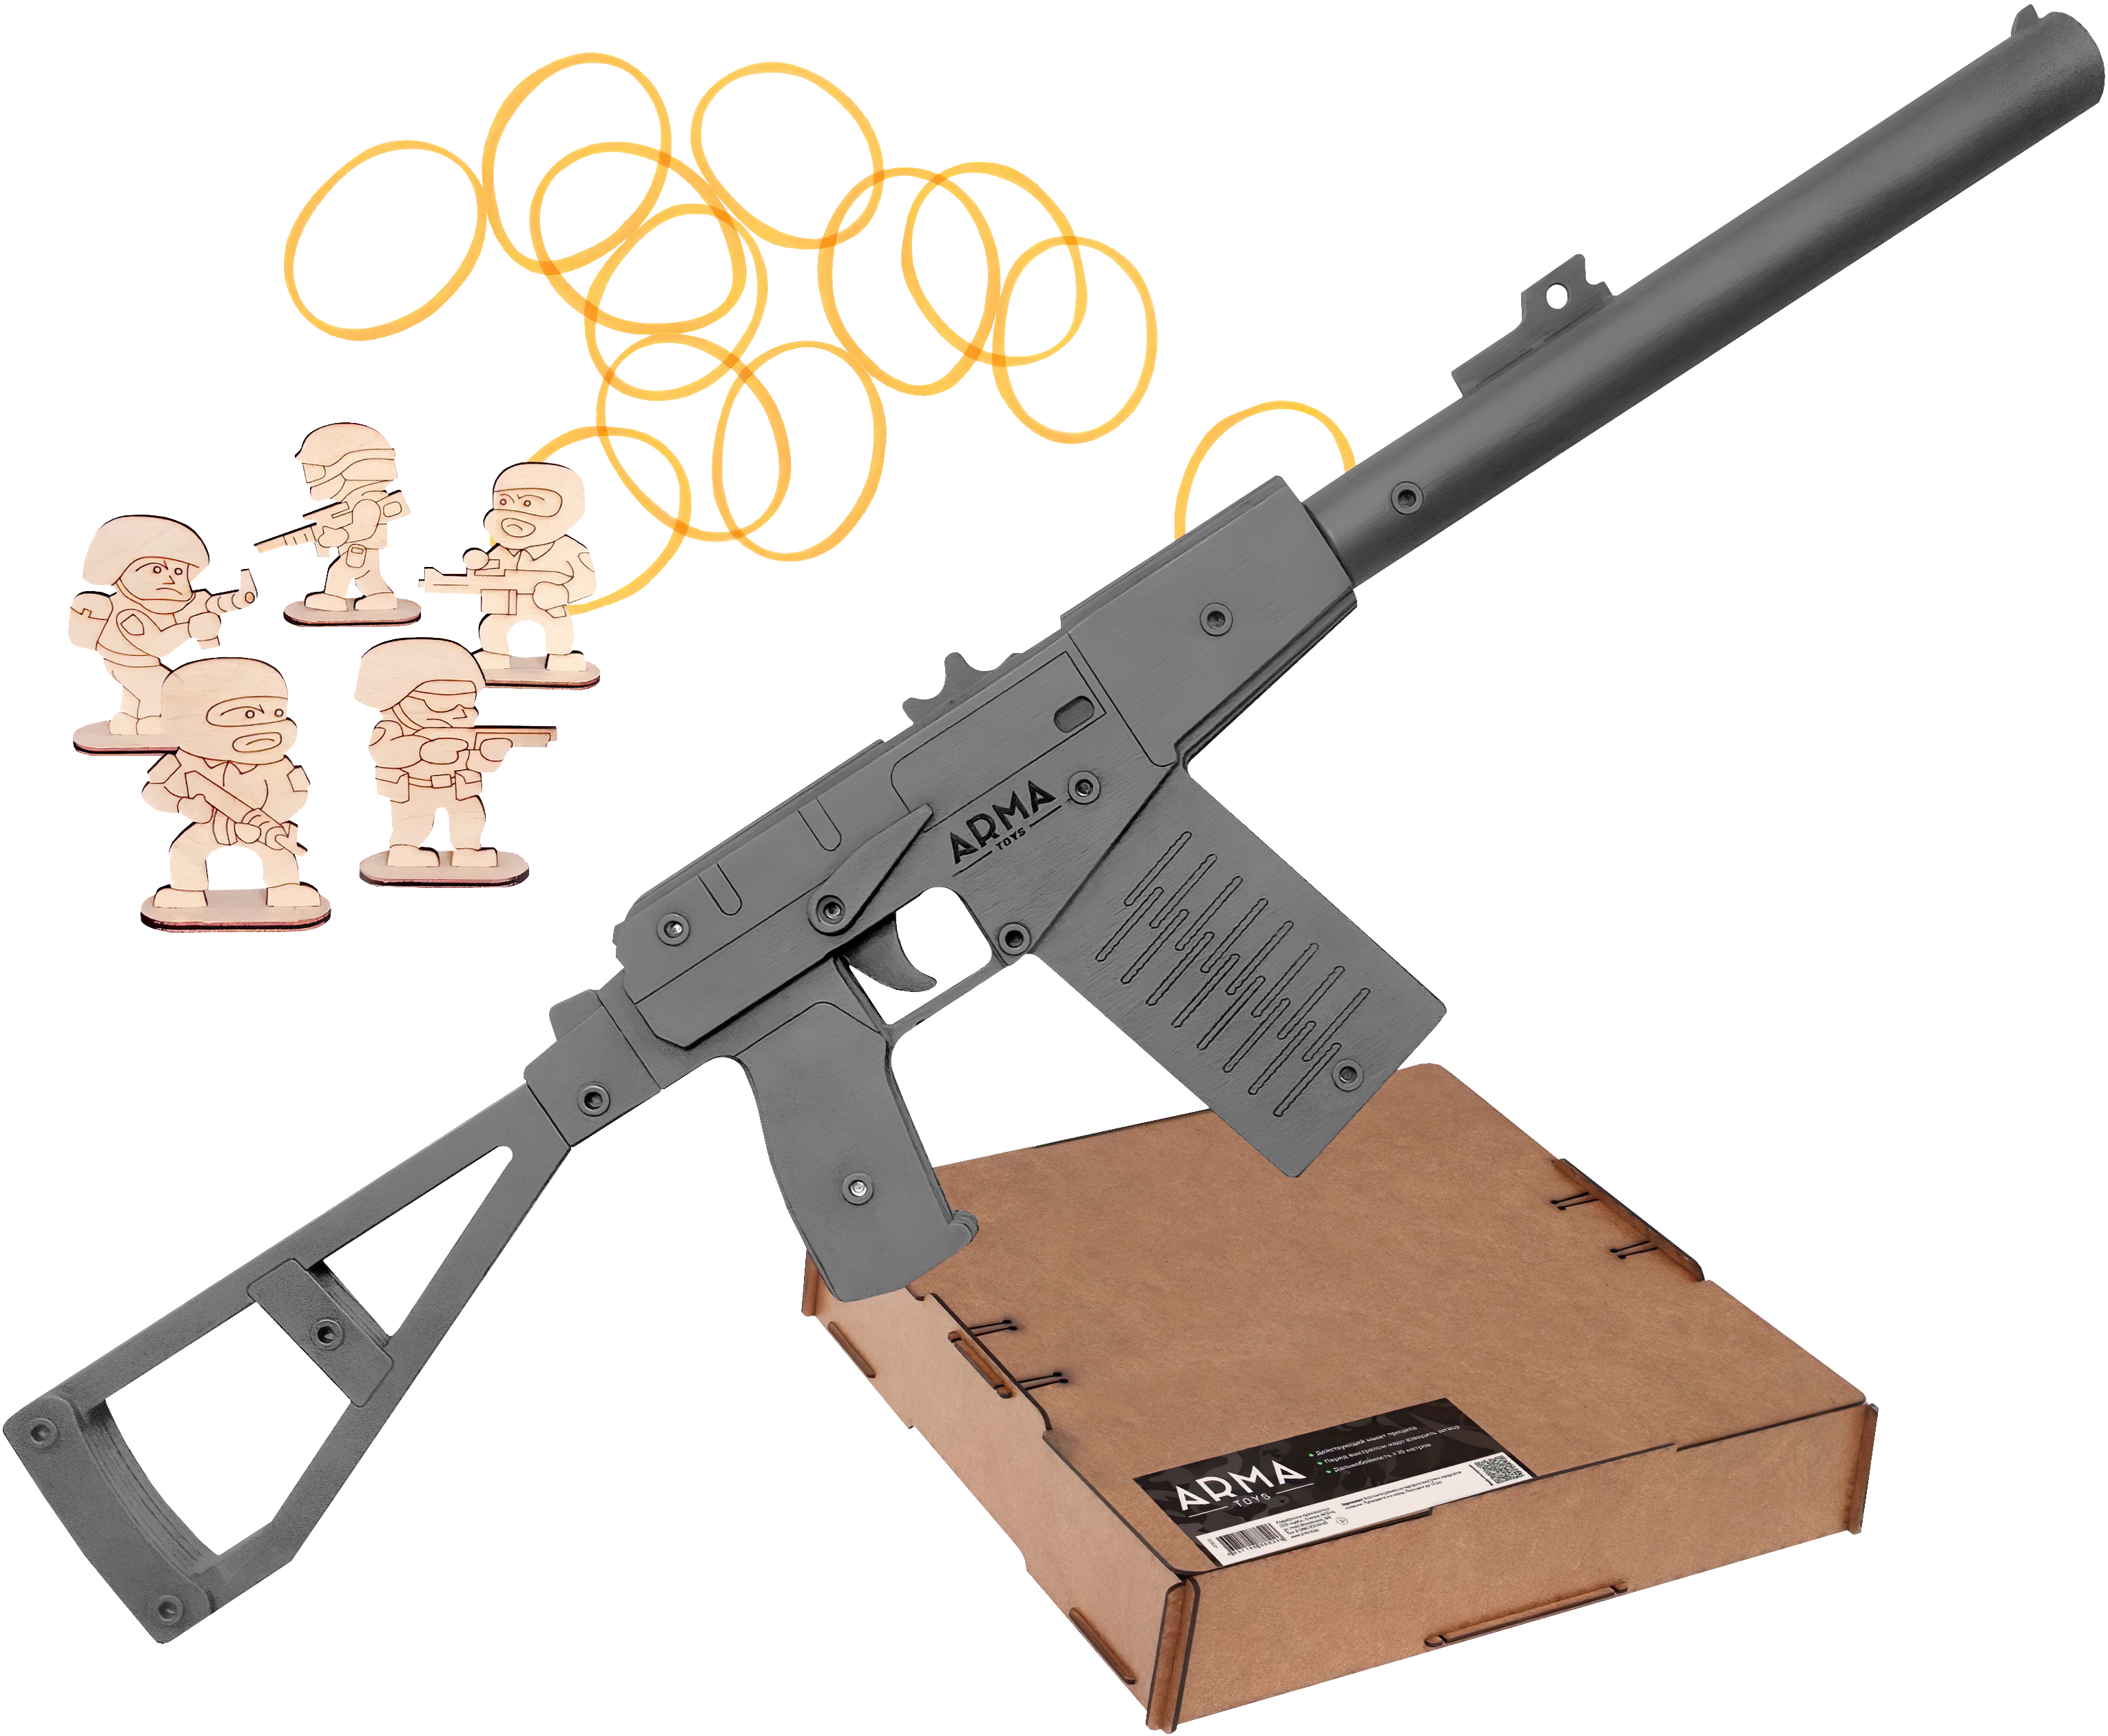 Резинкострел игрушечный Arma toys автомат АС Вал макет, окрашенный, AT028b битва за францию 2 arma toys автомат мп 40 и пистолет кольт резинкострелы в наборе